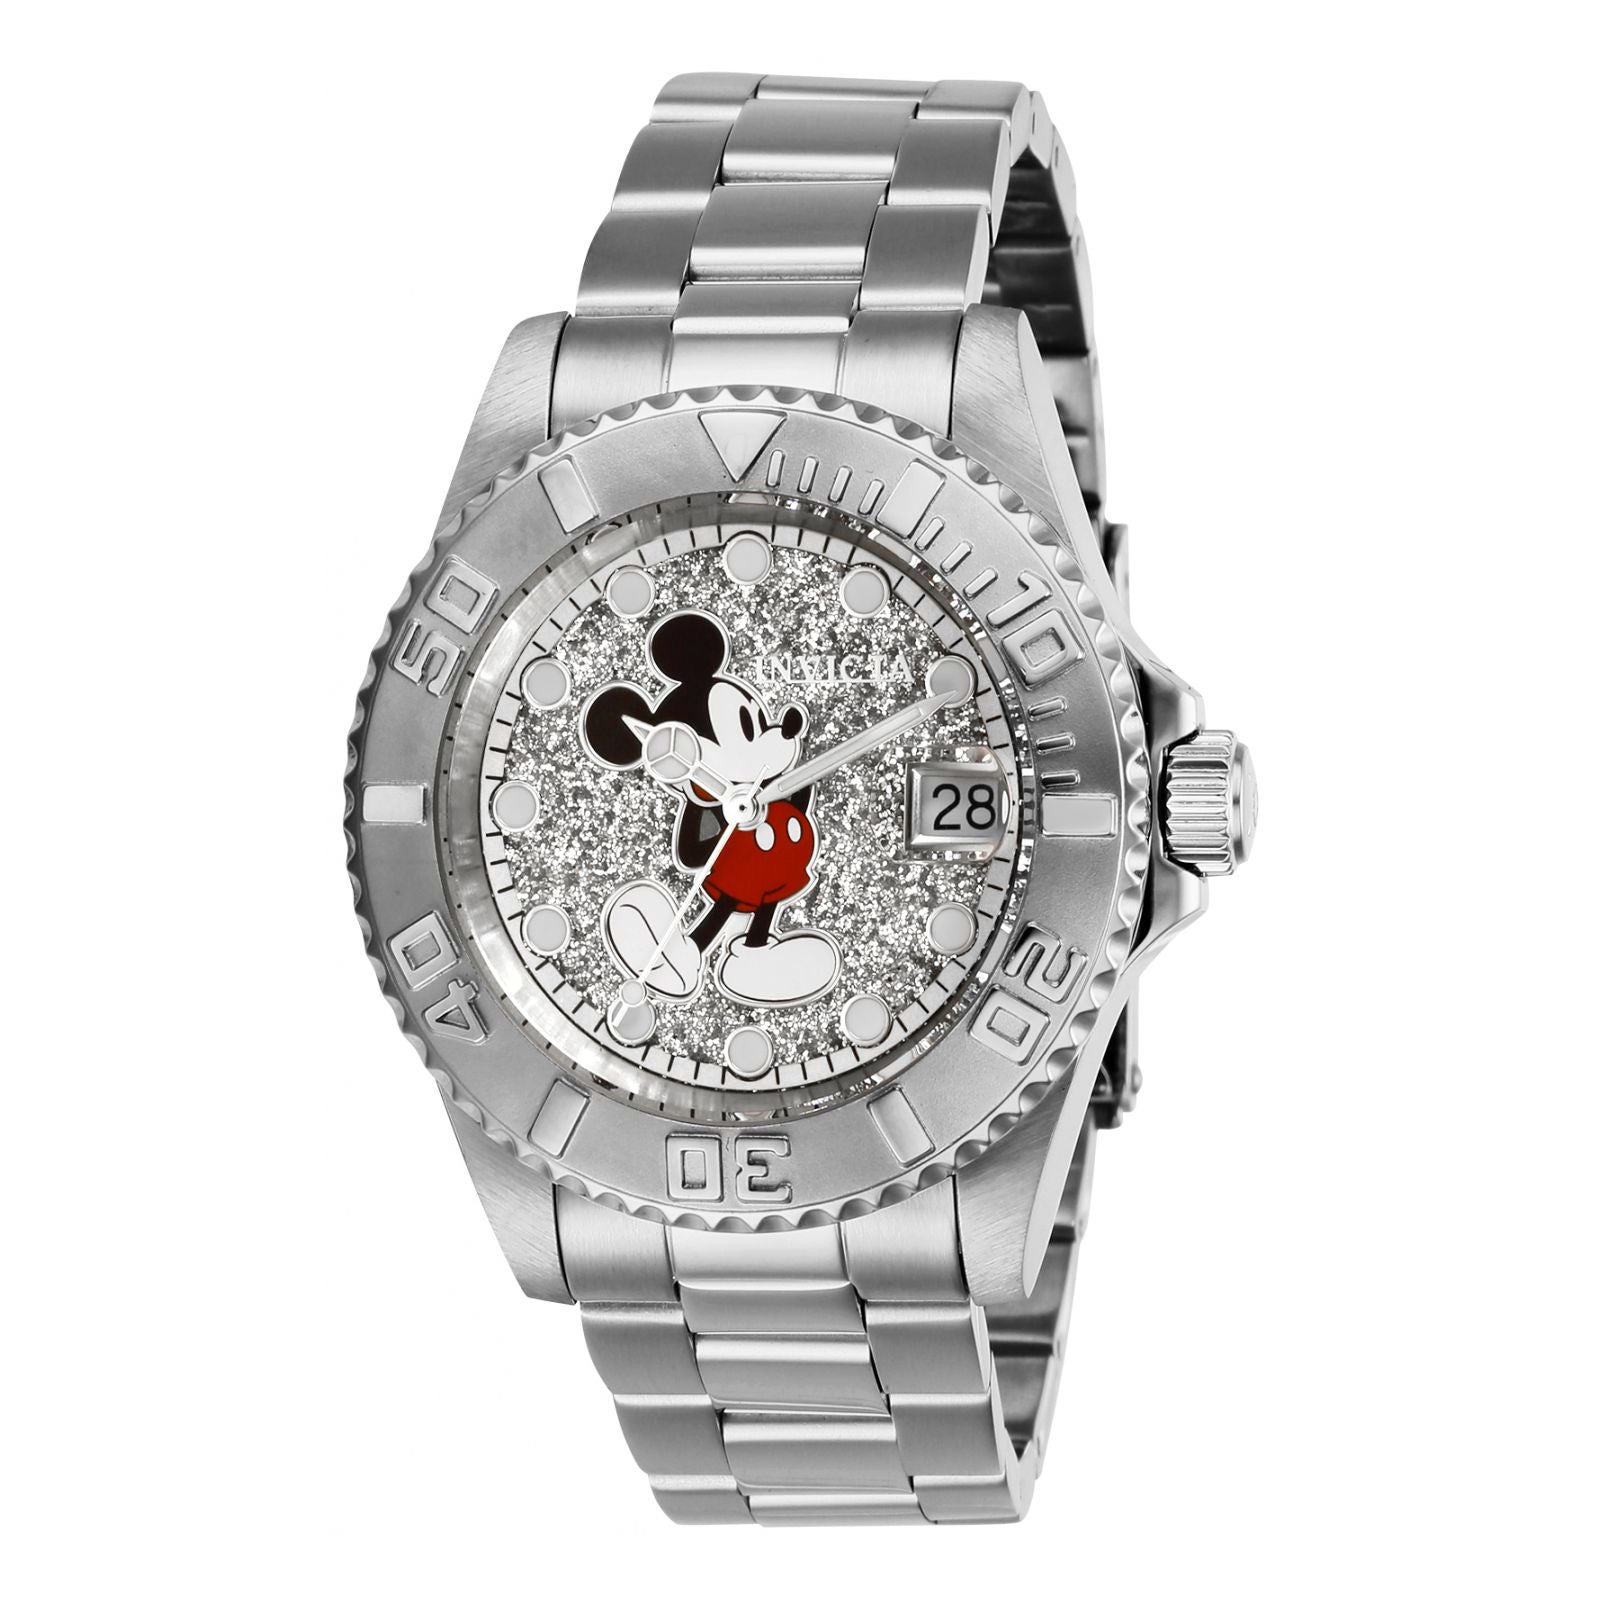 Reloj Invicta Disney Limited Edition 27381